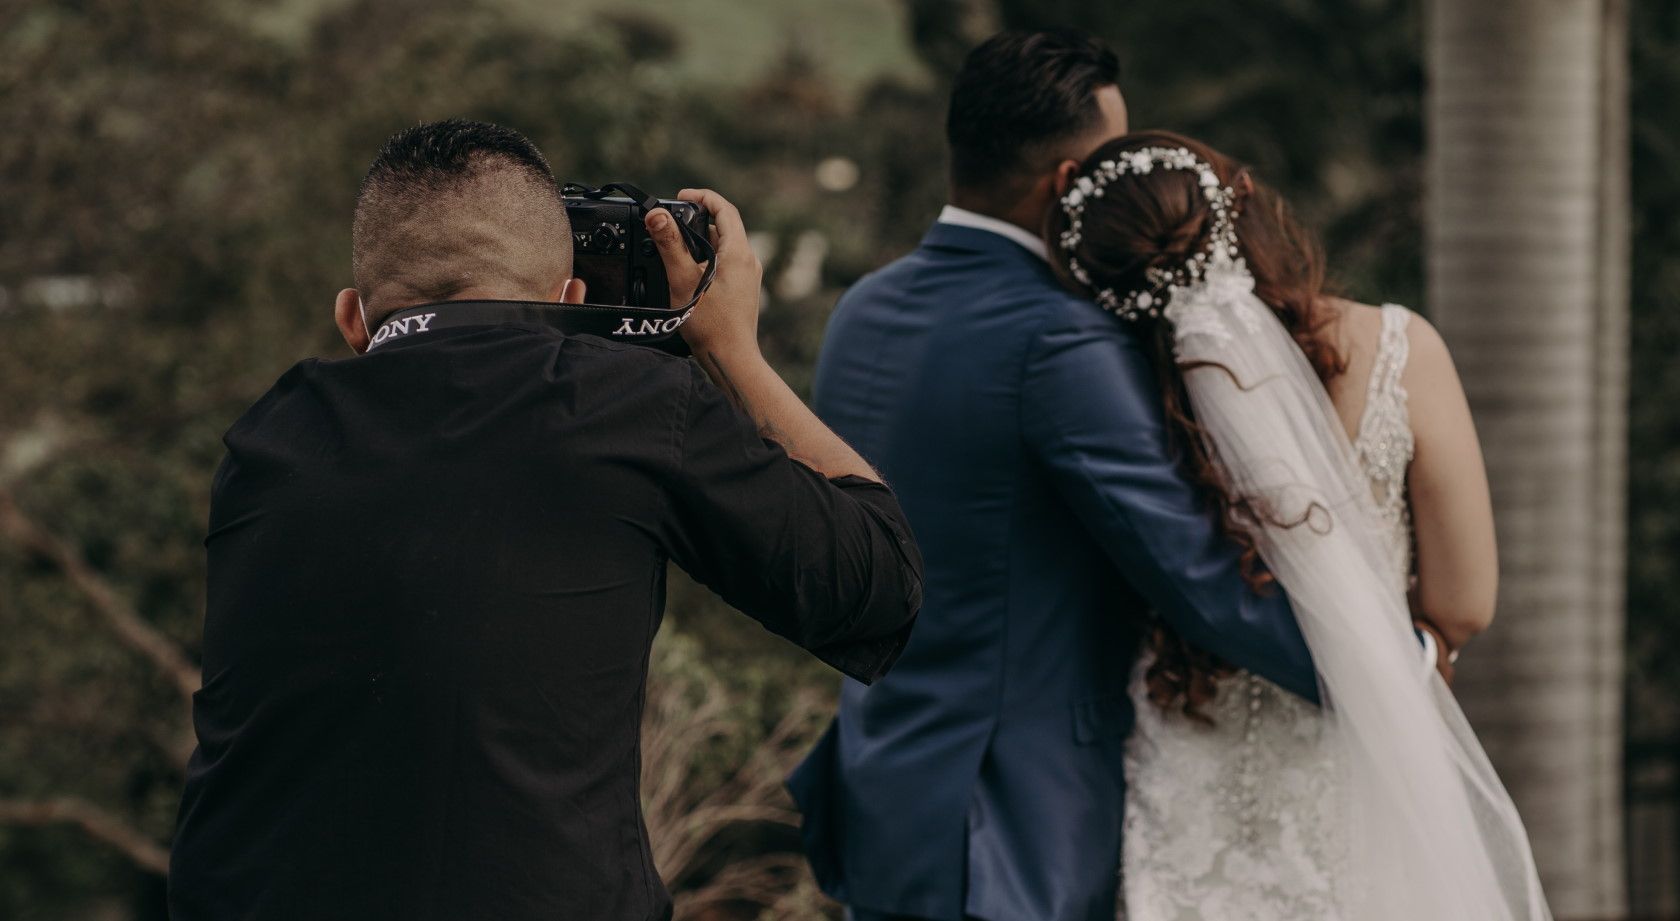 wedding photographer taking photographs of newlywed couple